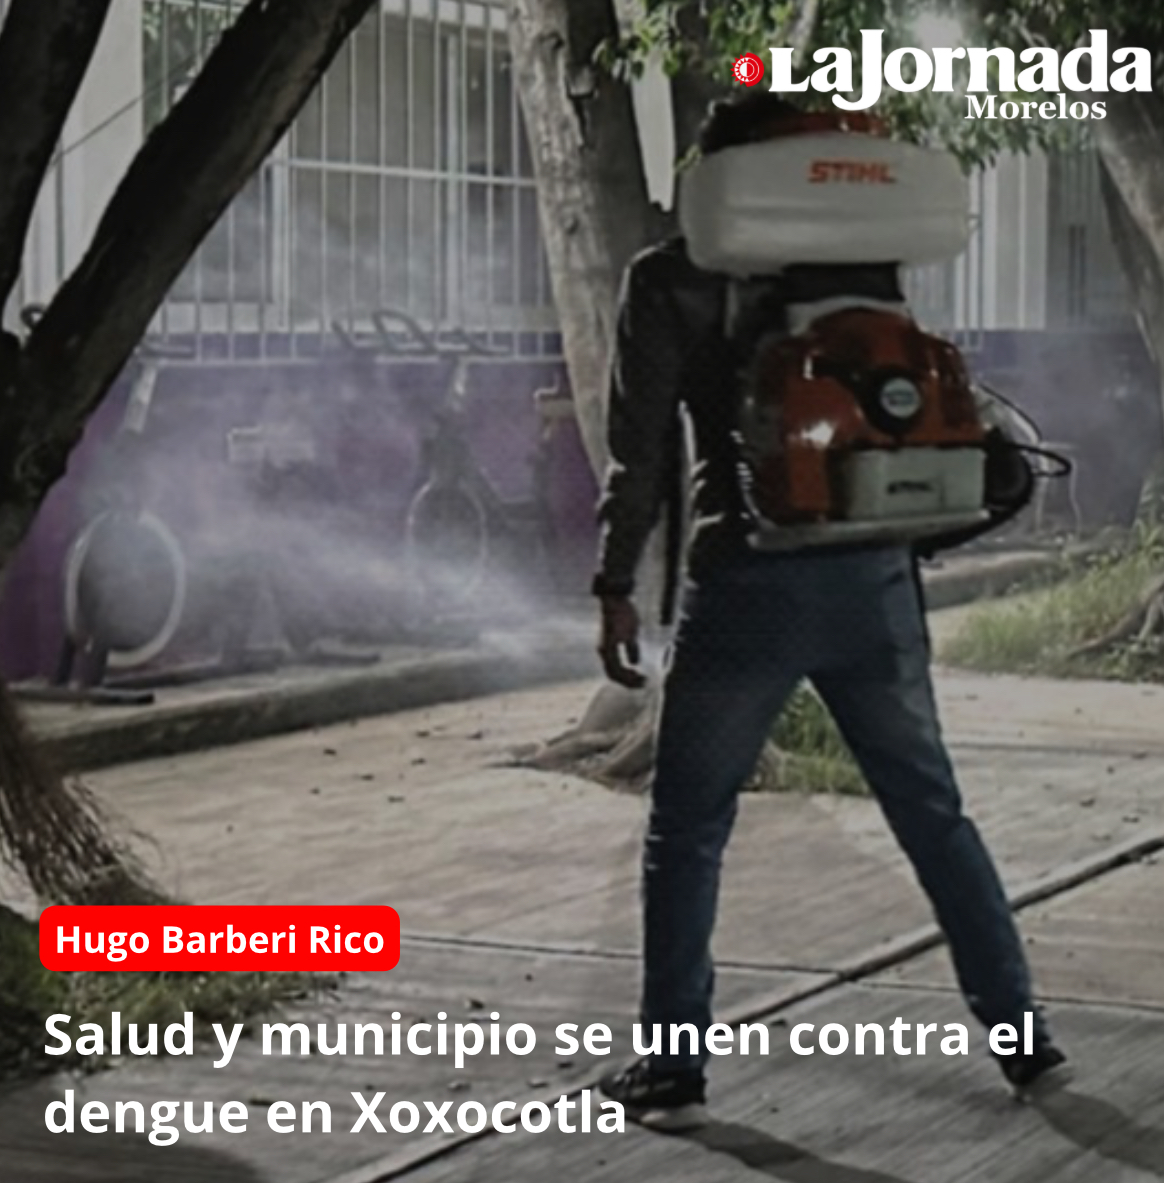 Salud y municipio se unen contra el dengue en Xoxocotla